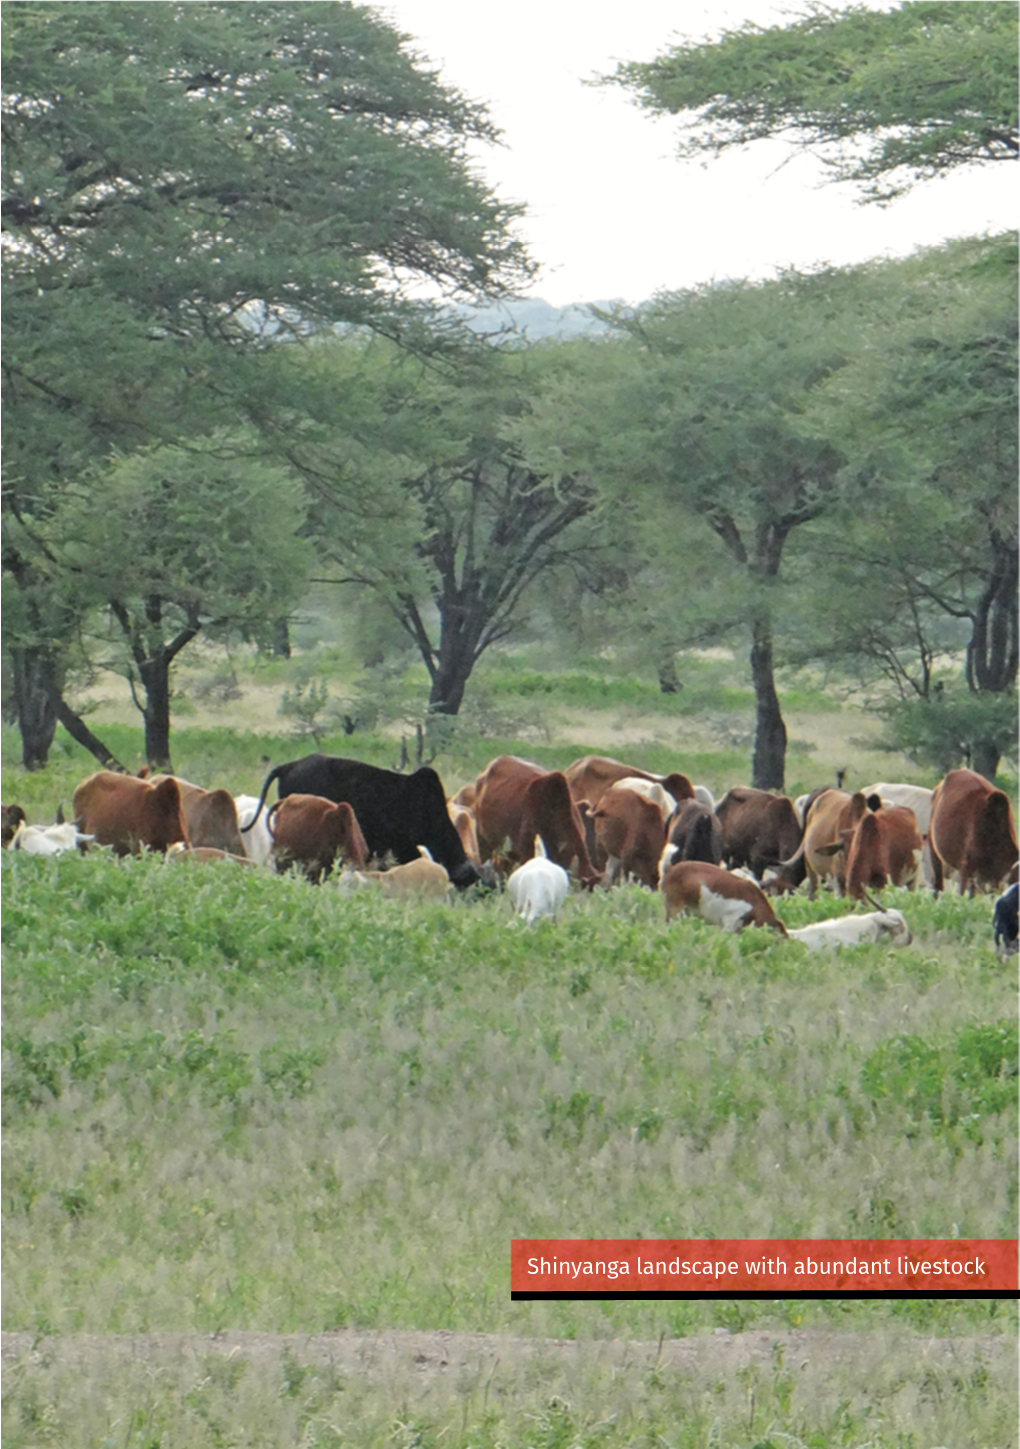 Shinyanga Landscape with Abundant Livestock